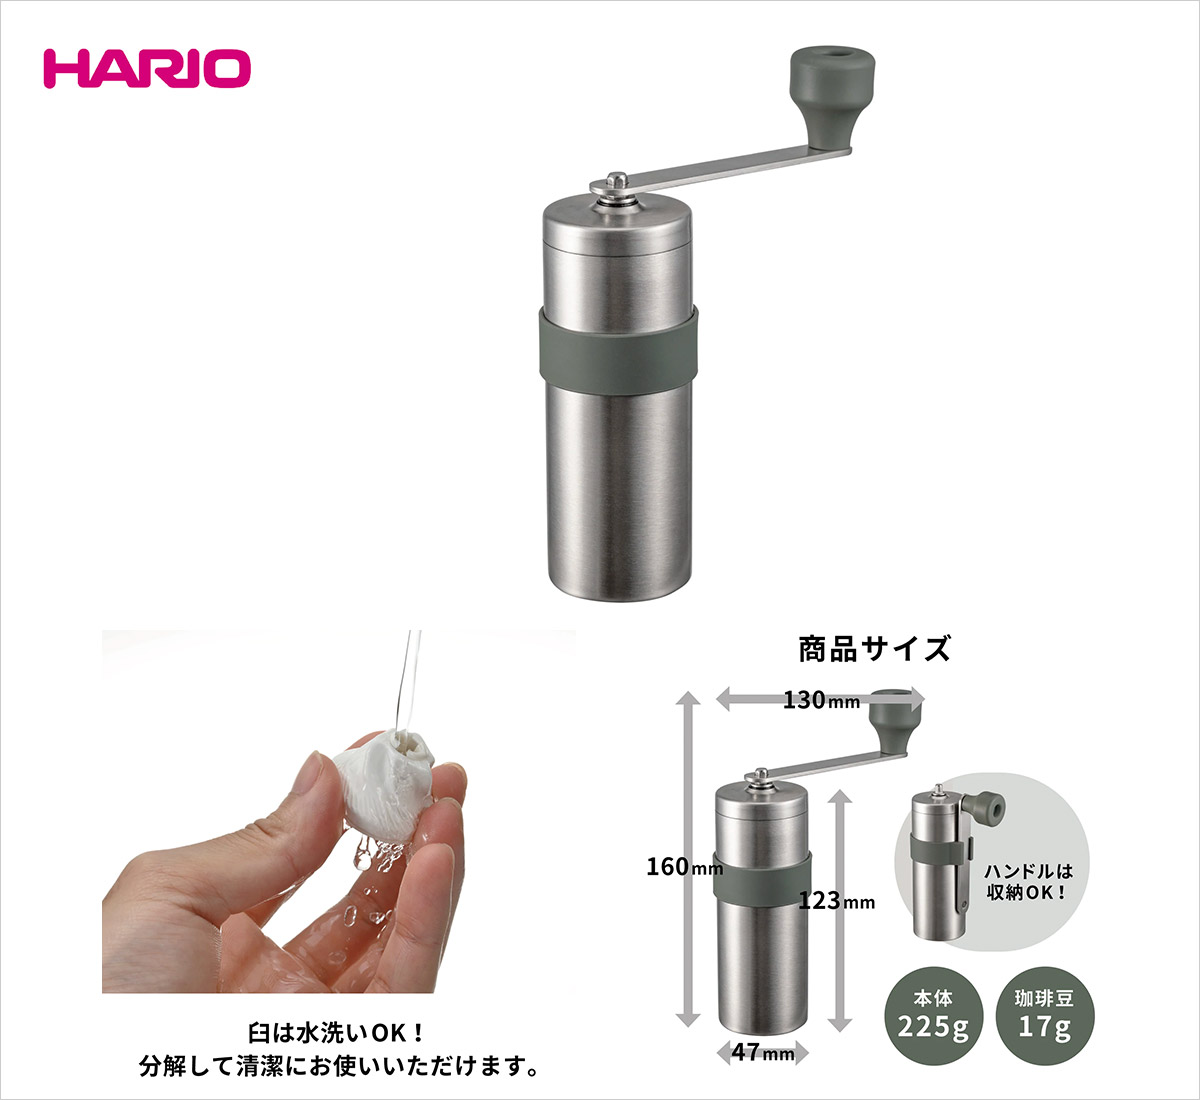 2022年新作 『HARIO』V60 メタルコーヒーミル